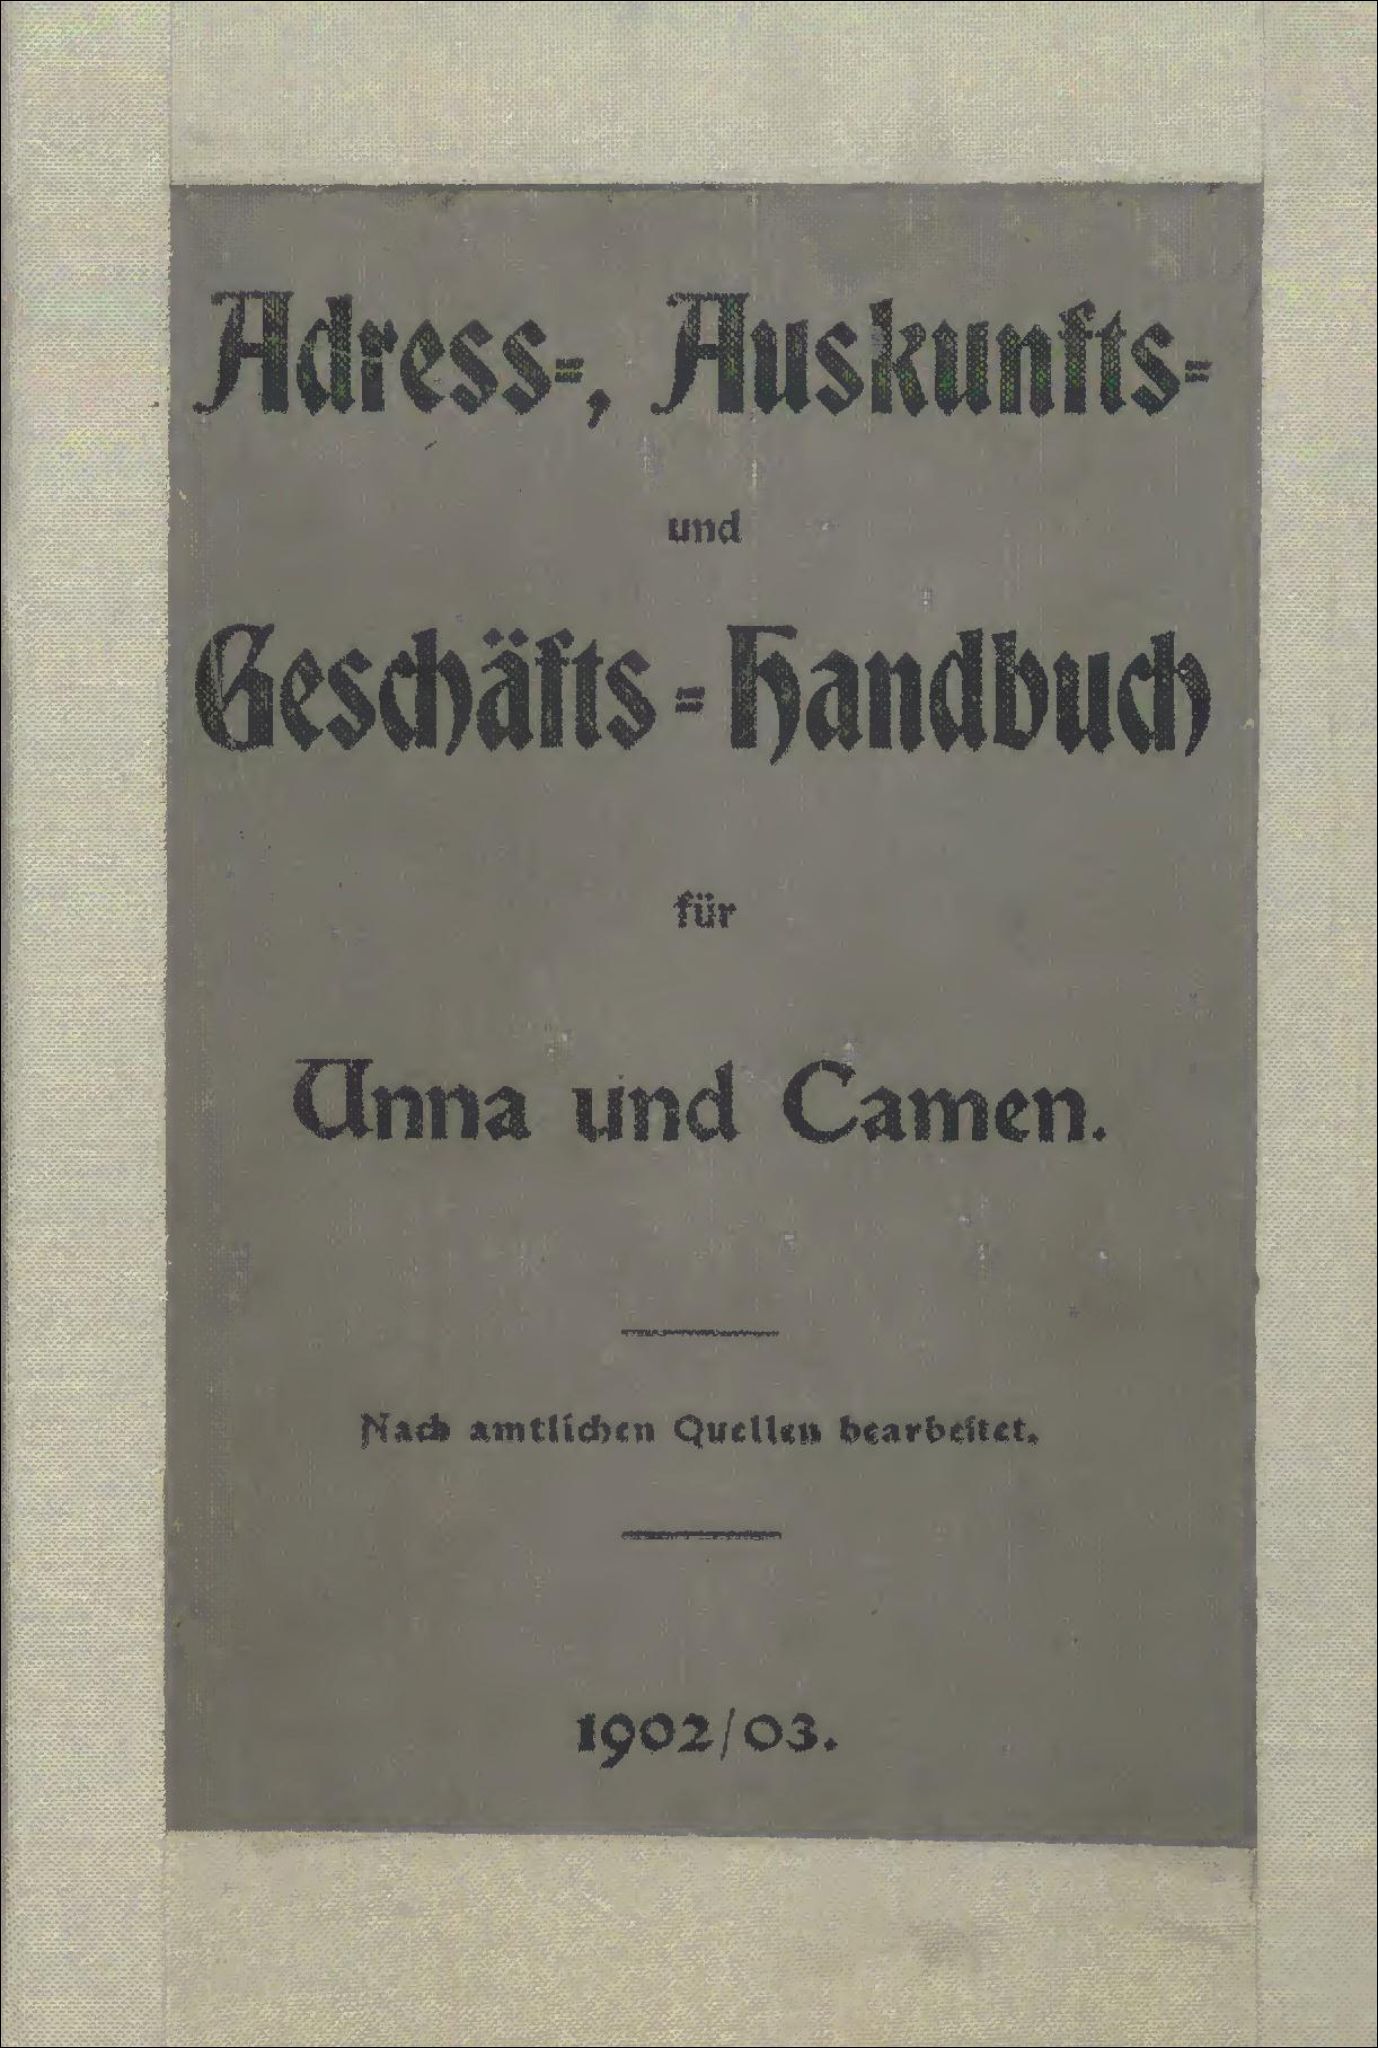 Adress-, Auskunfts- und Geschäfts-Handbuch für Unna und Camen 1902/03